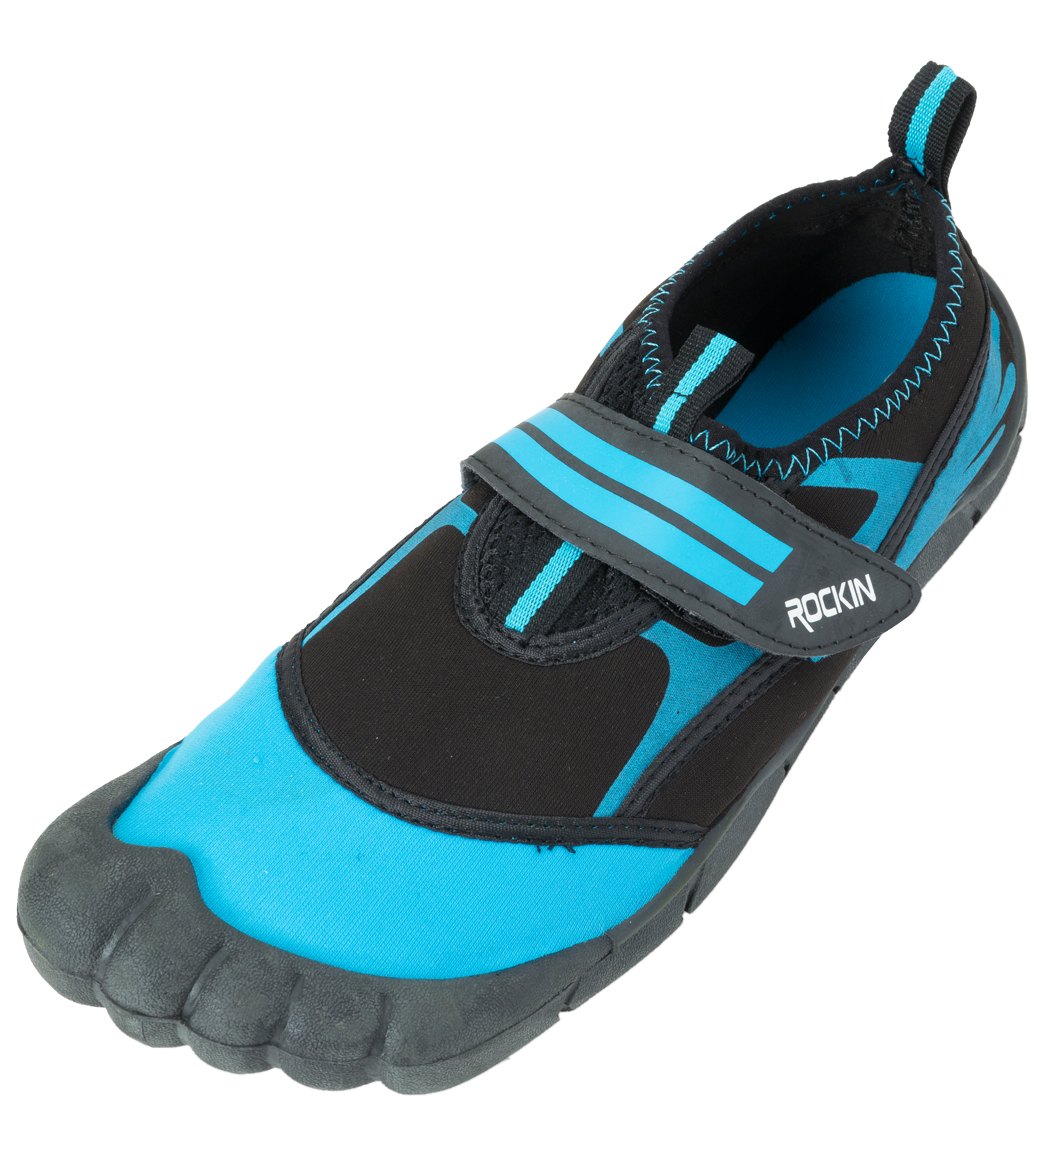 Rockin Footwear Men's Aqua Foot Water Shoes at SwimOutlet.com